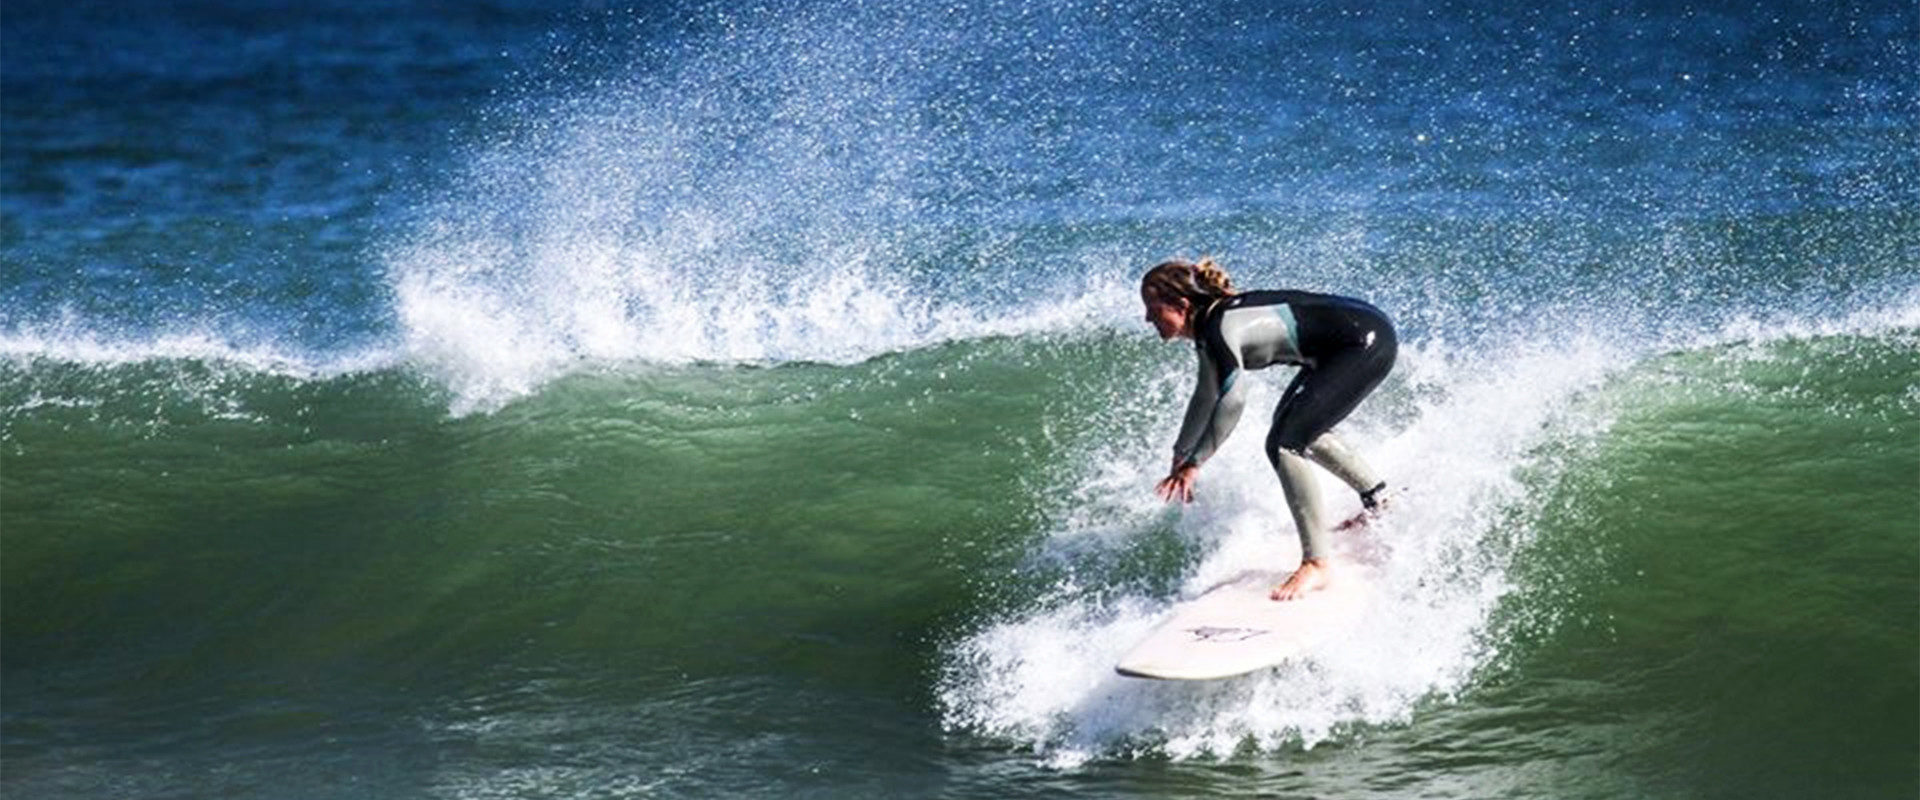 Stefanie Schider surft auf einer Welle am Meer.